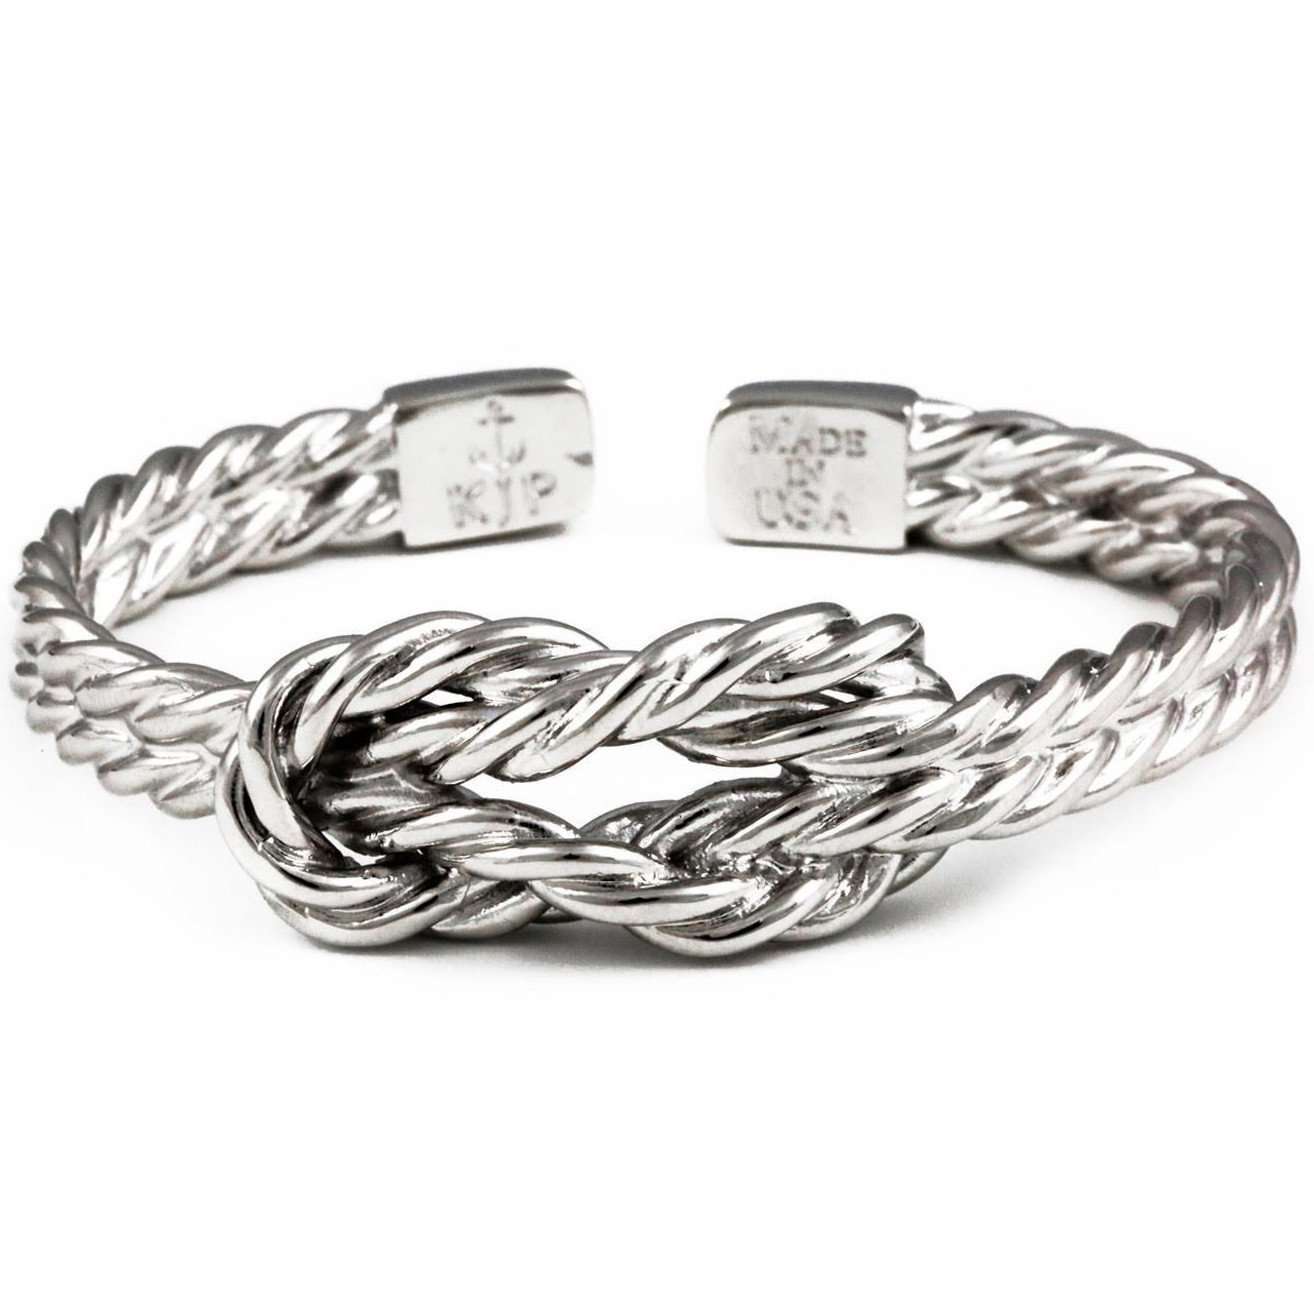 Kiel James Patrick Sailor's Luck Cuff Bracelet in Silver